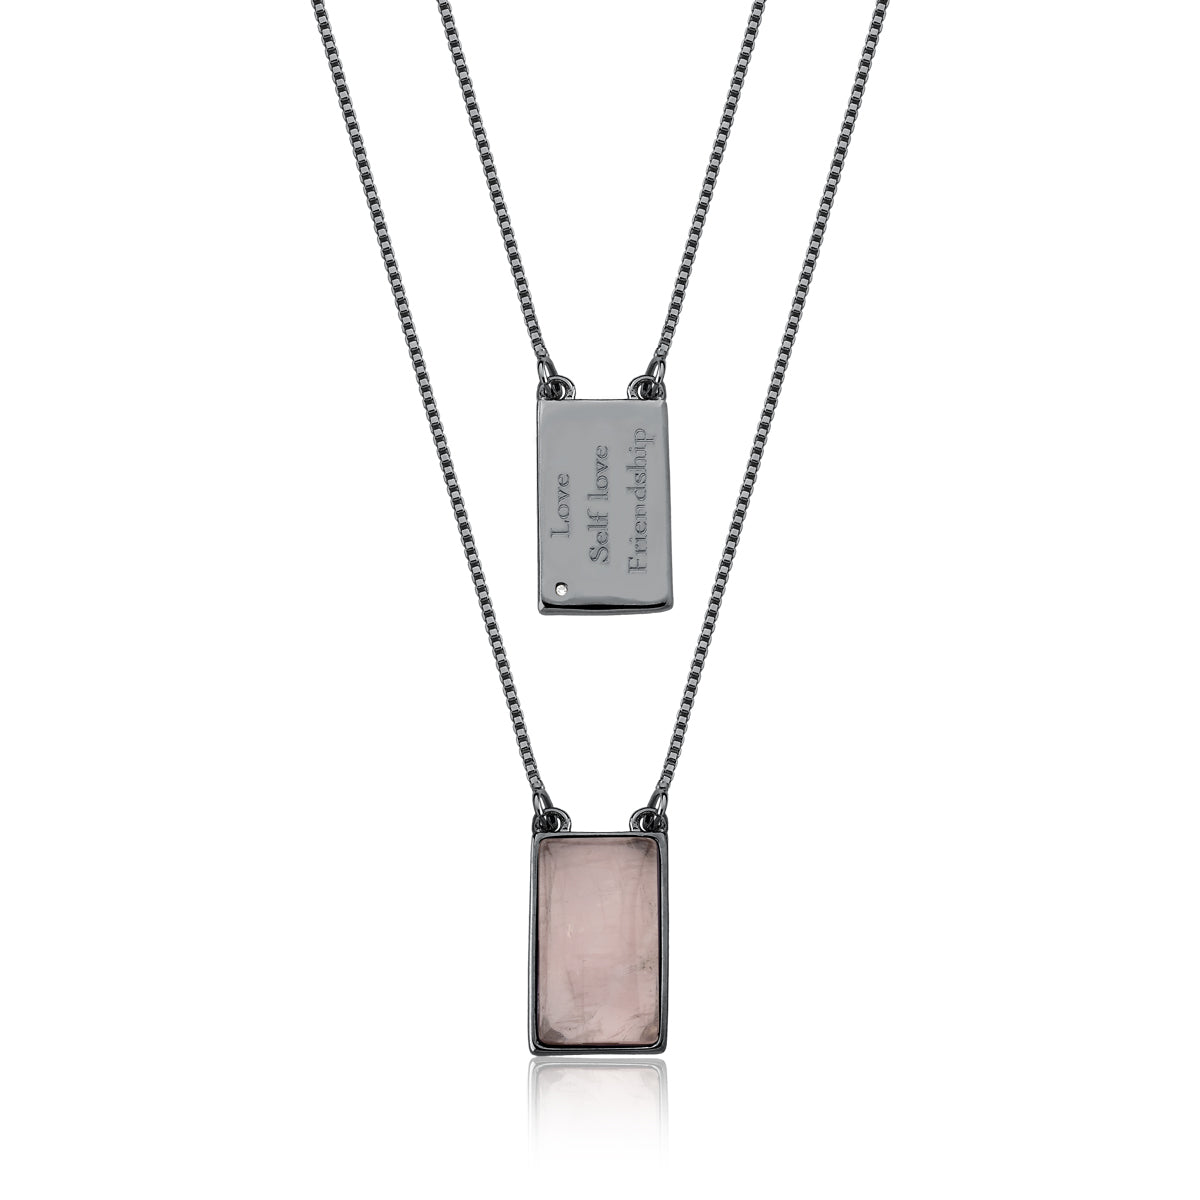 Rose quartz necklace